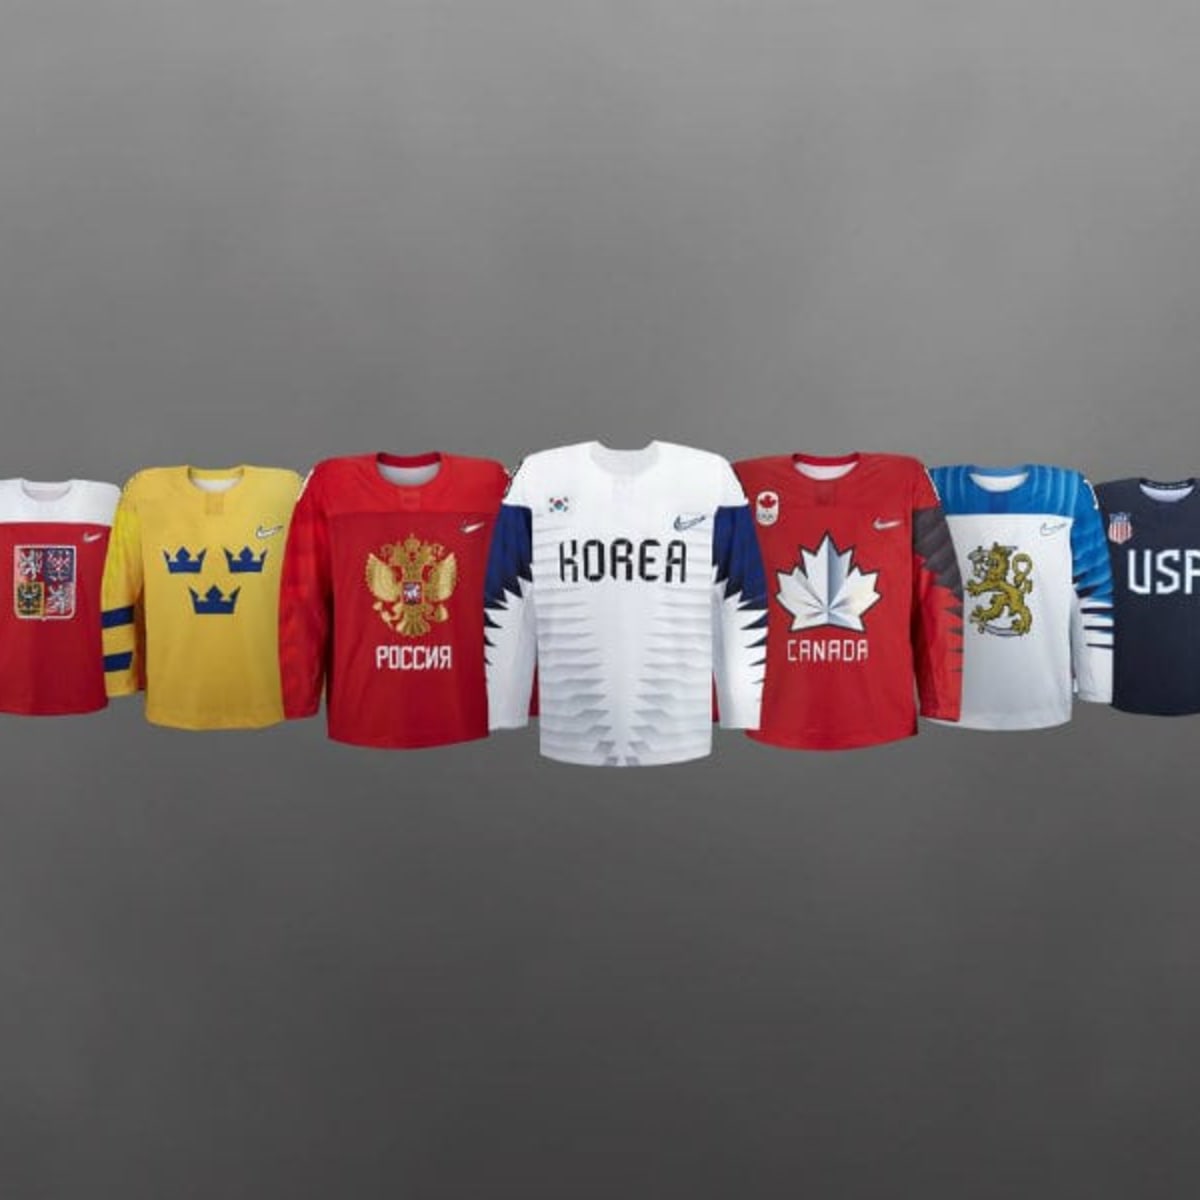 Team Canada unveils Sochi 2014 Olympic hockey jerseys